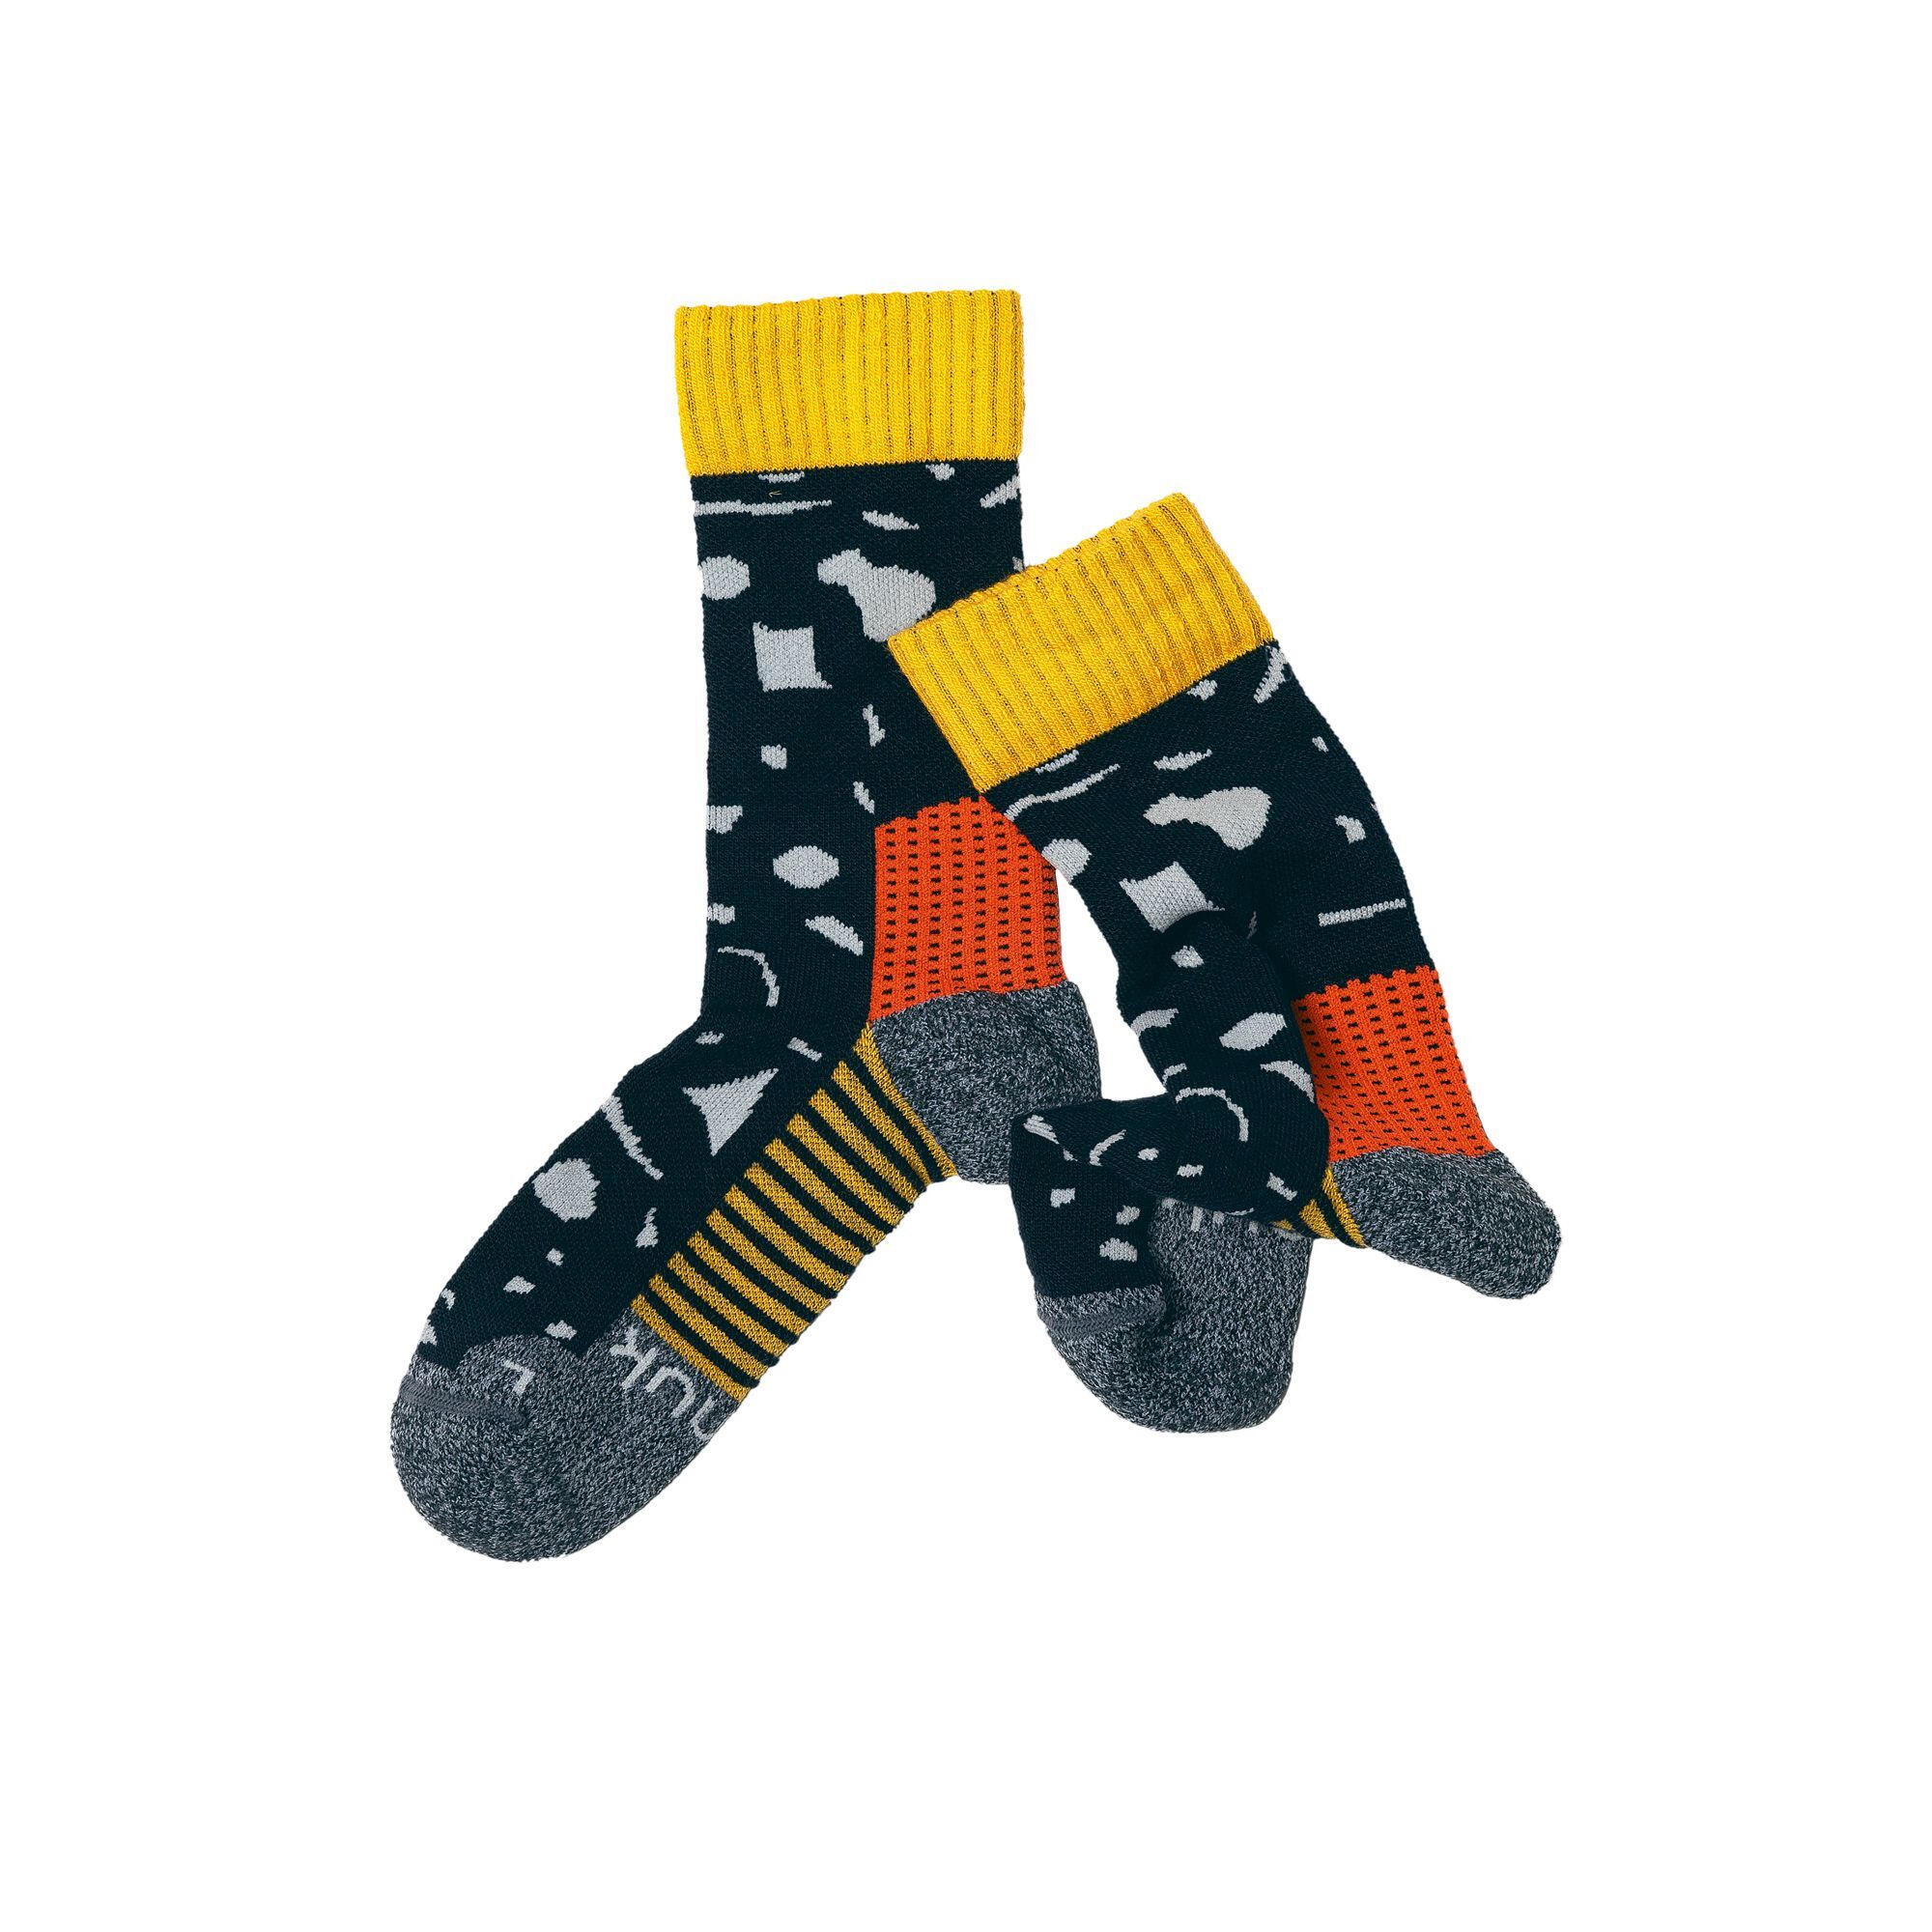 Namuk Peak Merino - Merino socks - Kid's | Hardloop